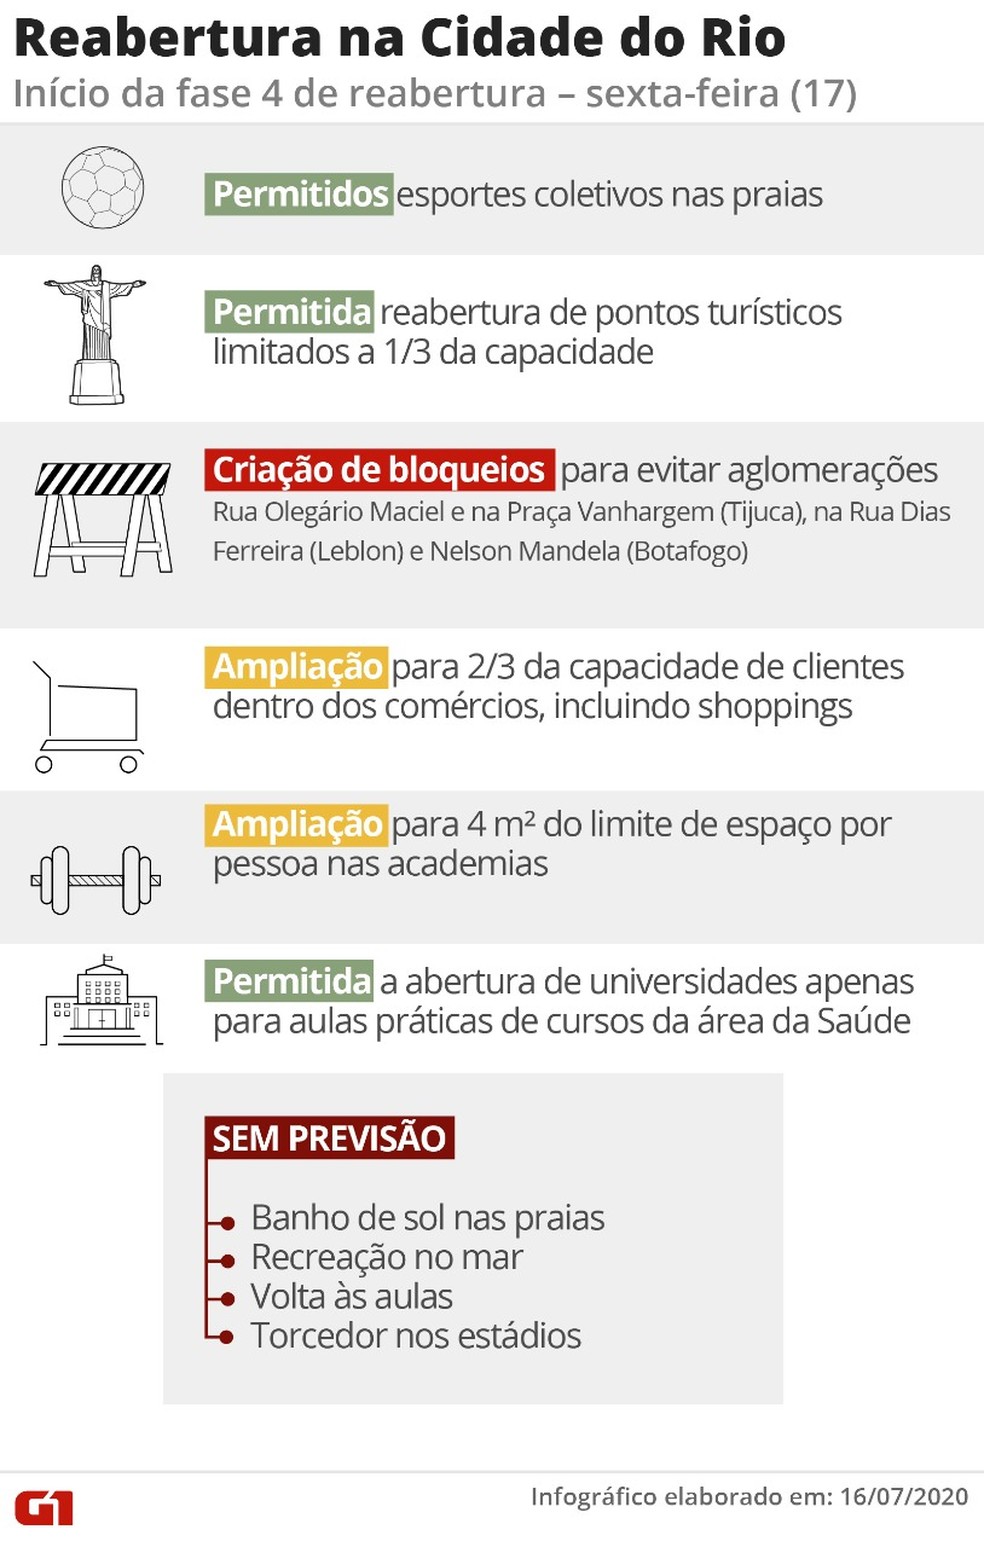 Arte mostra o que está permitido na Fase 4 da reabertura no Rio — Foto: Infografia/G1